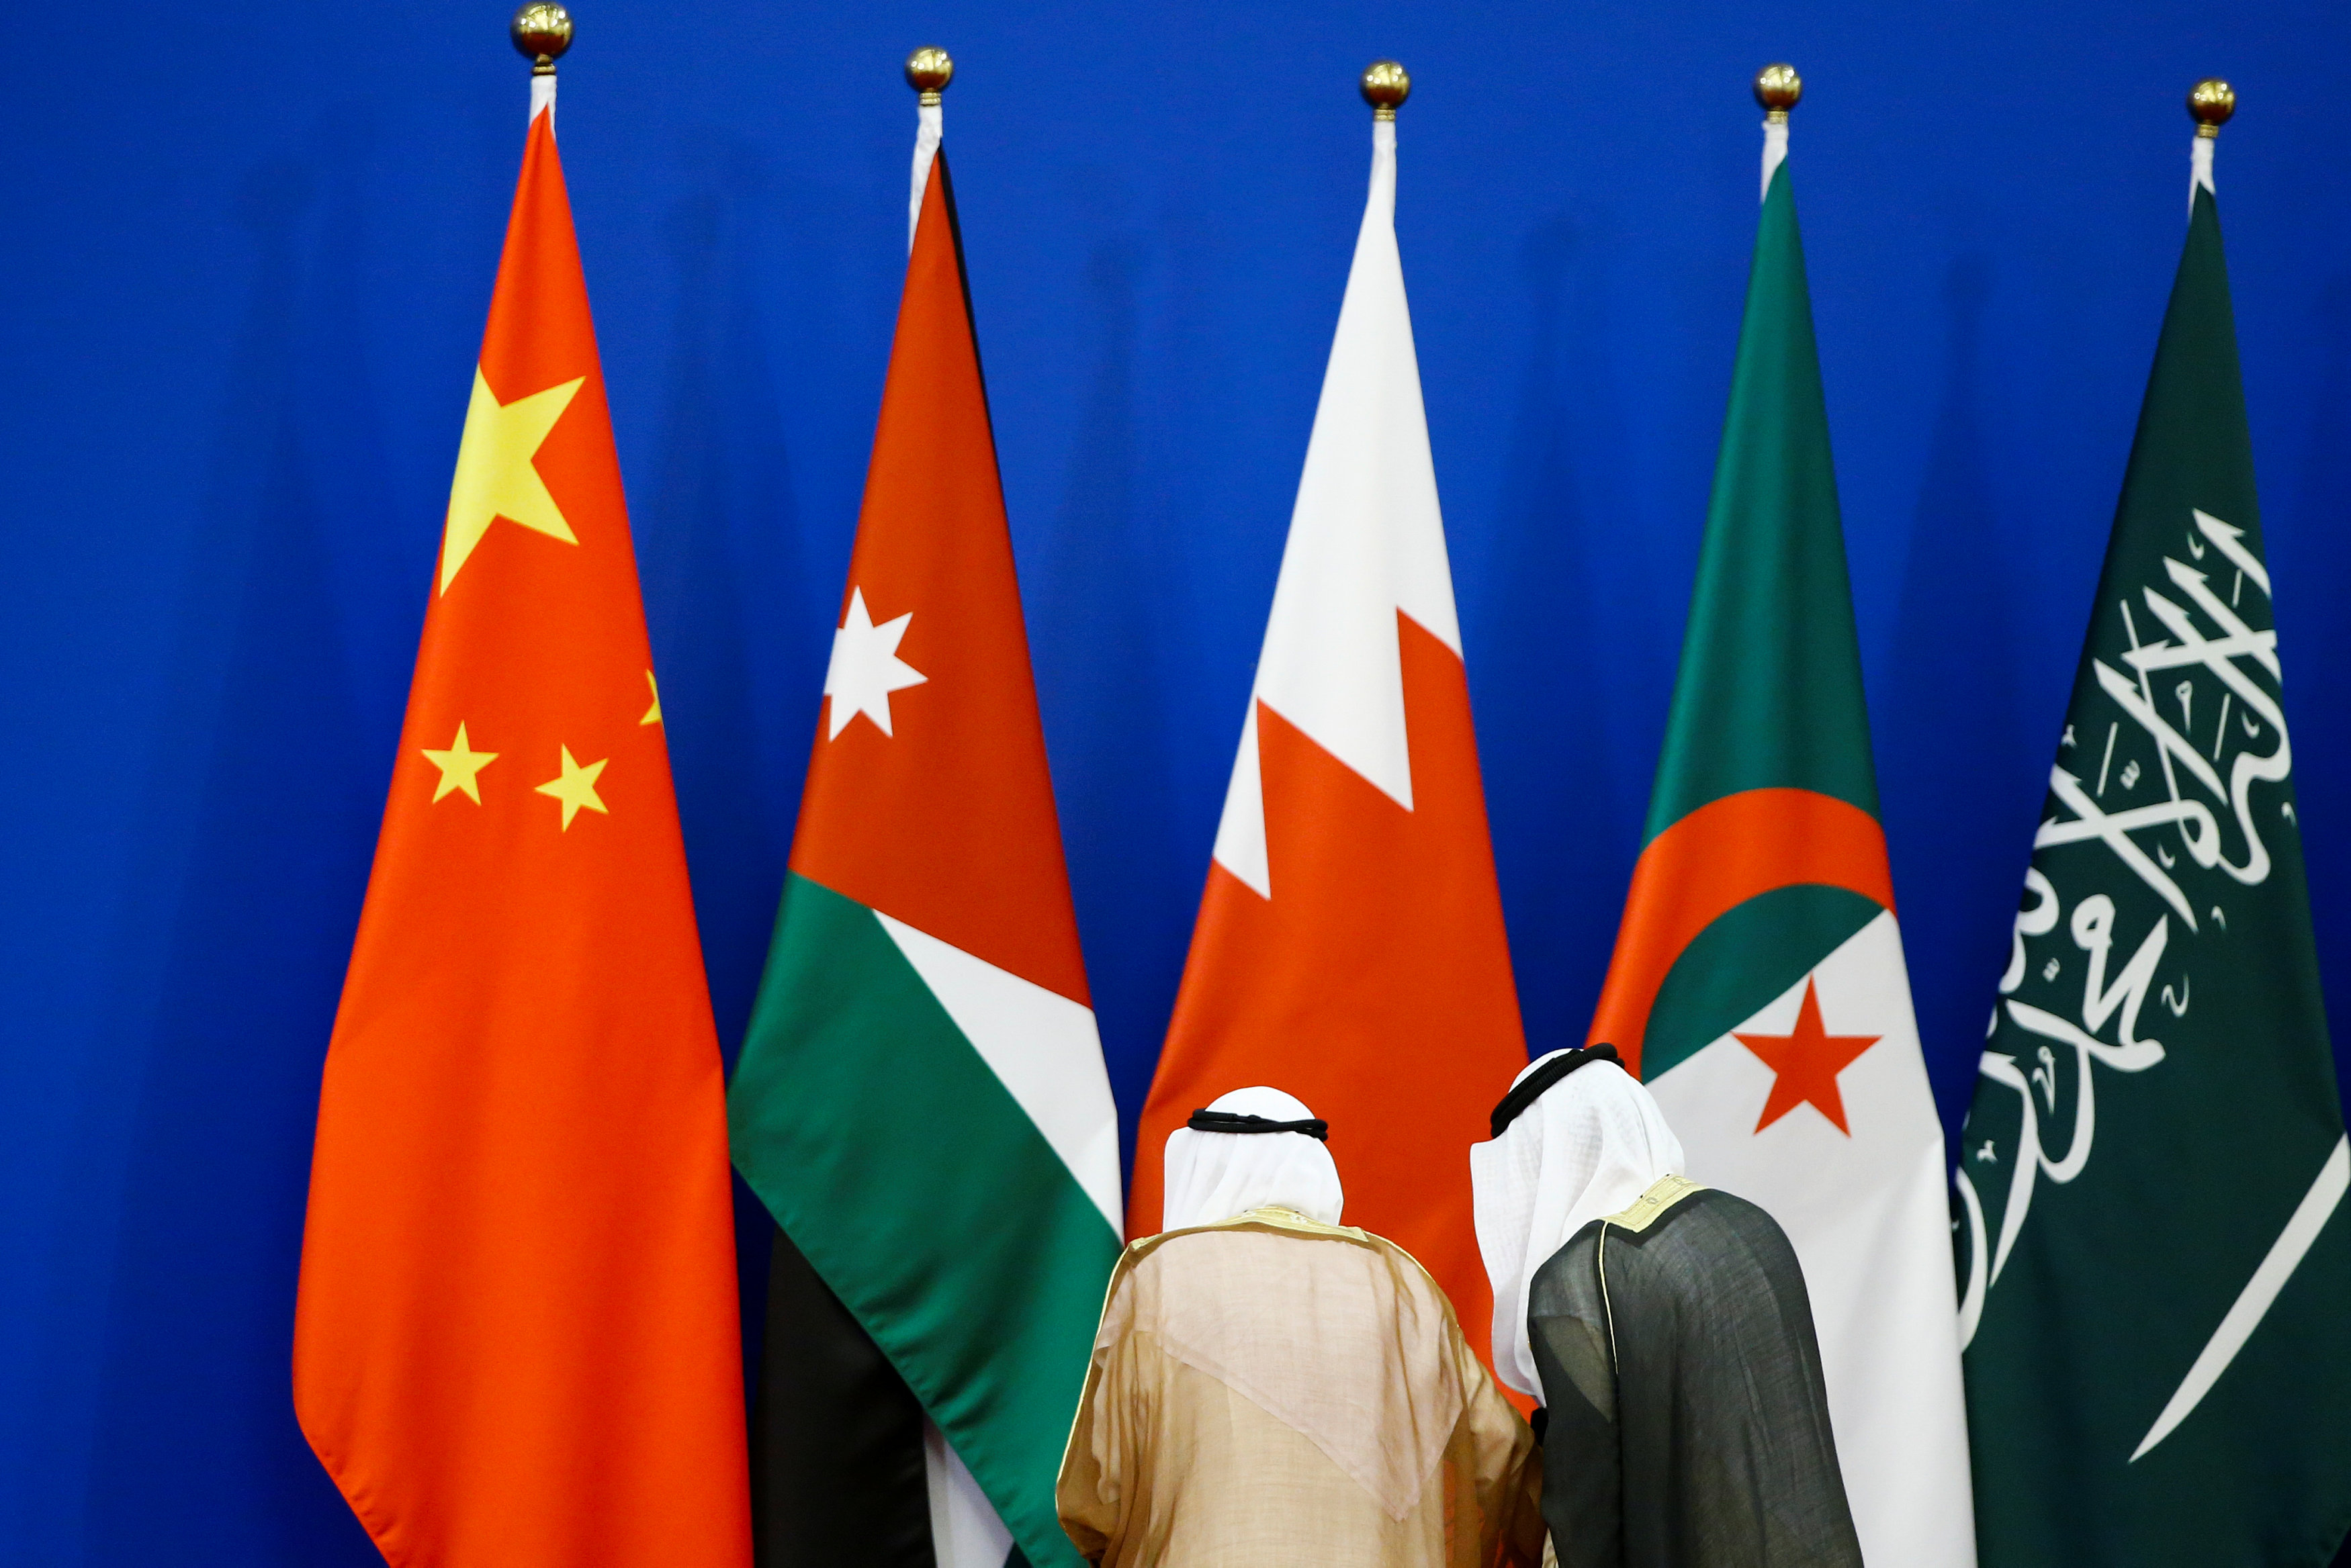 العلم الأردني بجانب الصيني في الاجتماع الوزاري للمنتدى الصيني العربي المنعقد في بيجين. ثوماس بيترز/ رويترز 